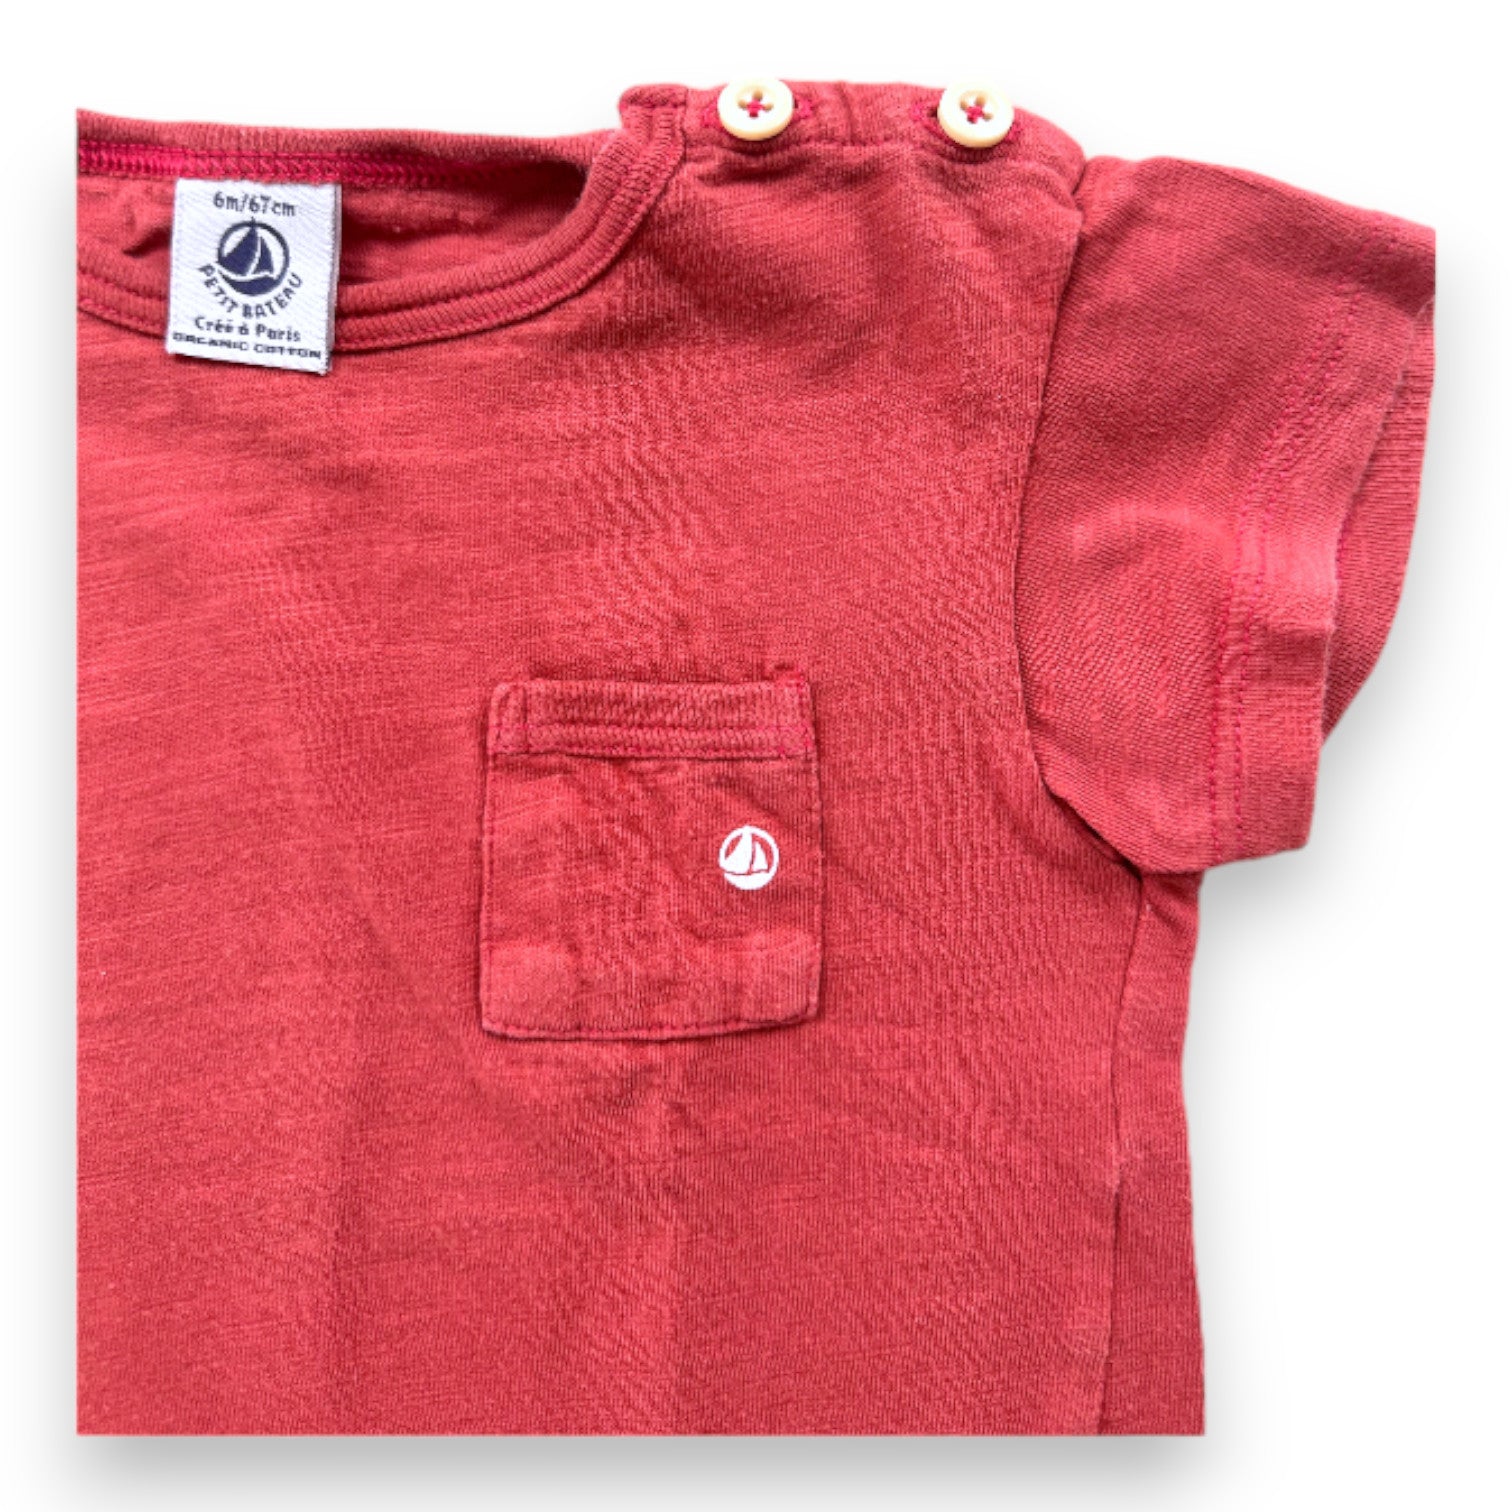 PETIT BATEAU - T-shirt rouge à manches courtes - 6 mois